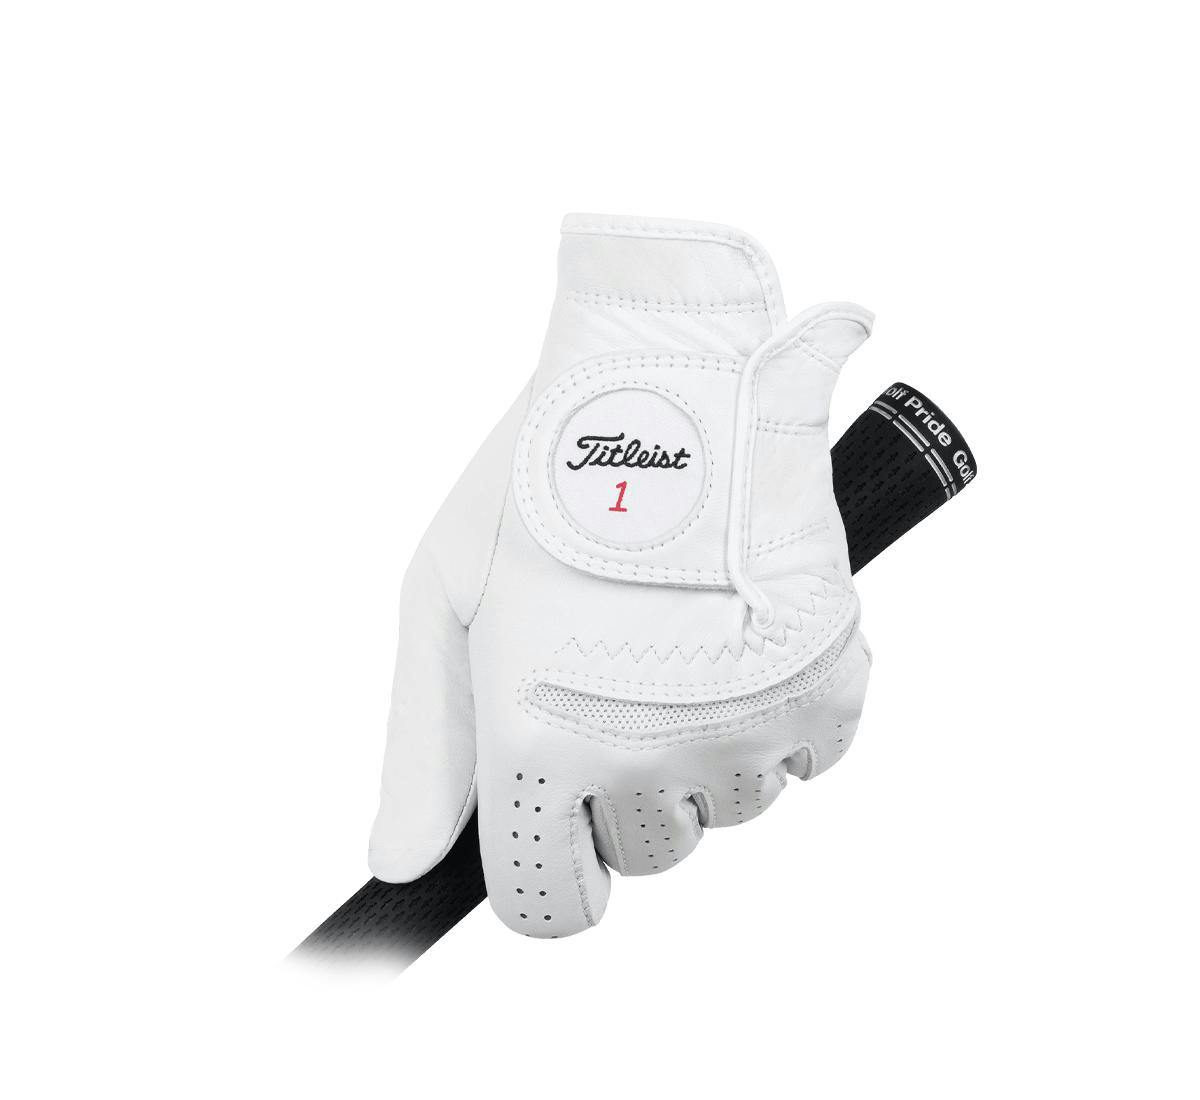 Titleist Men's Perma-Soft  Golf Glove